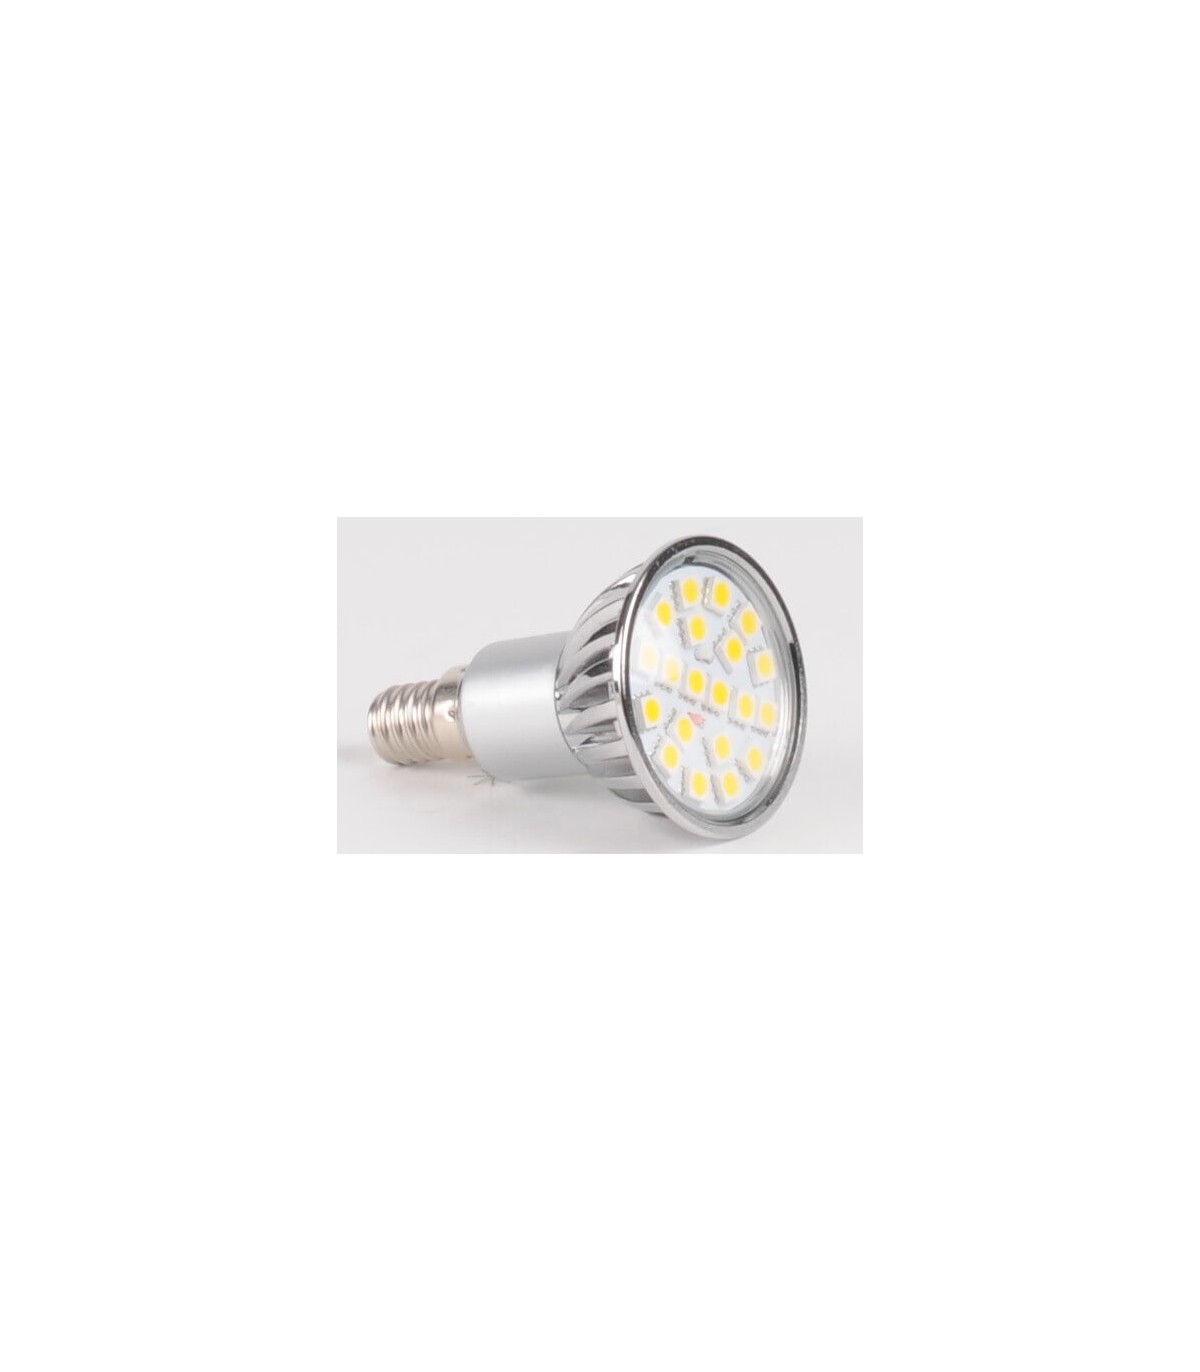 Ampoule led E14 SMD 5 watt (eq. 37 watt) - Couleur eclairage - Blanc froid